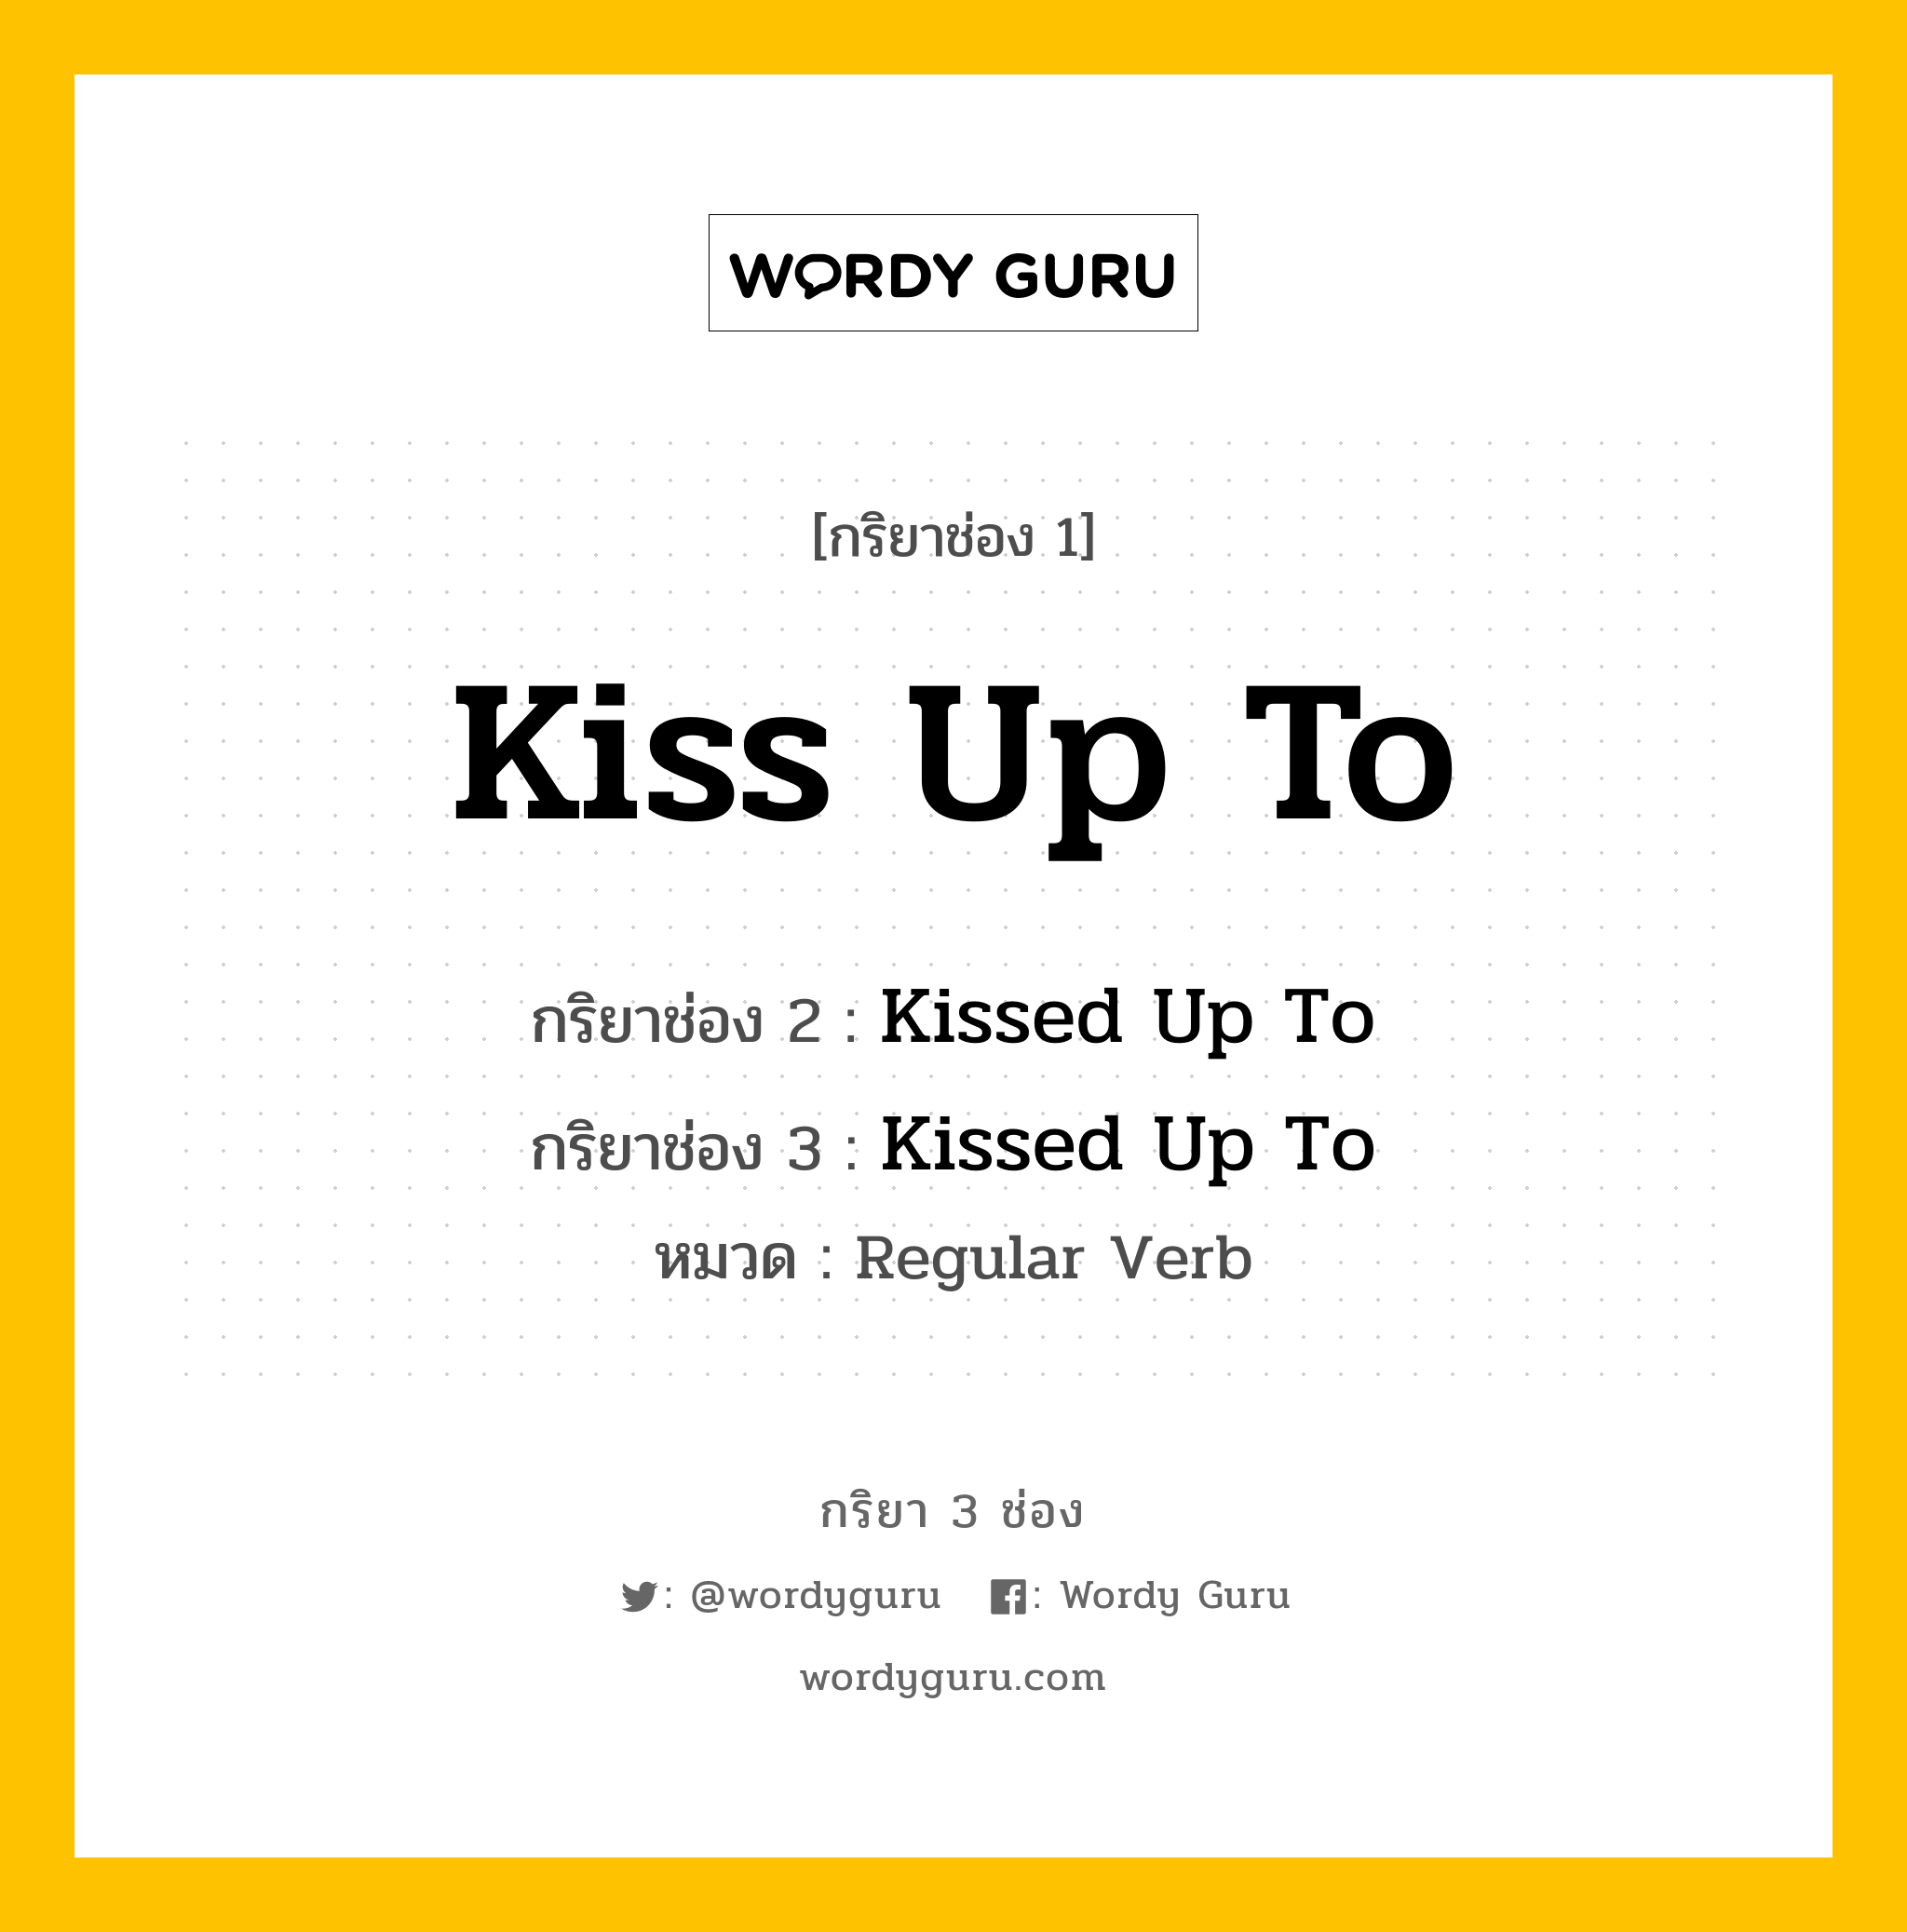 กริยา 3 ช่อง: Kiss Up To ช่อง 2 Kiss Up To ช่อง 3 คืออะไร, กริยาช่อง 1 Kiss Up To กริยาช่อง 2 Kissed Up To กริยาช่อง 3 Kissed Up To หมวด Regular Verb หมวด Regular Verb